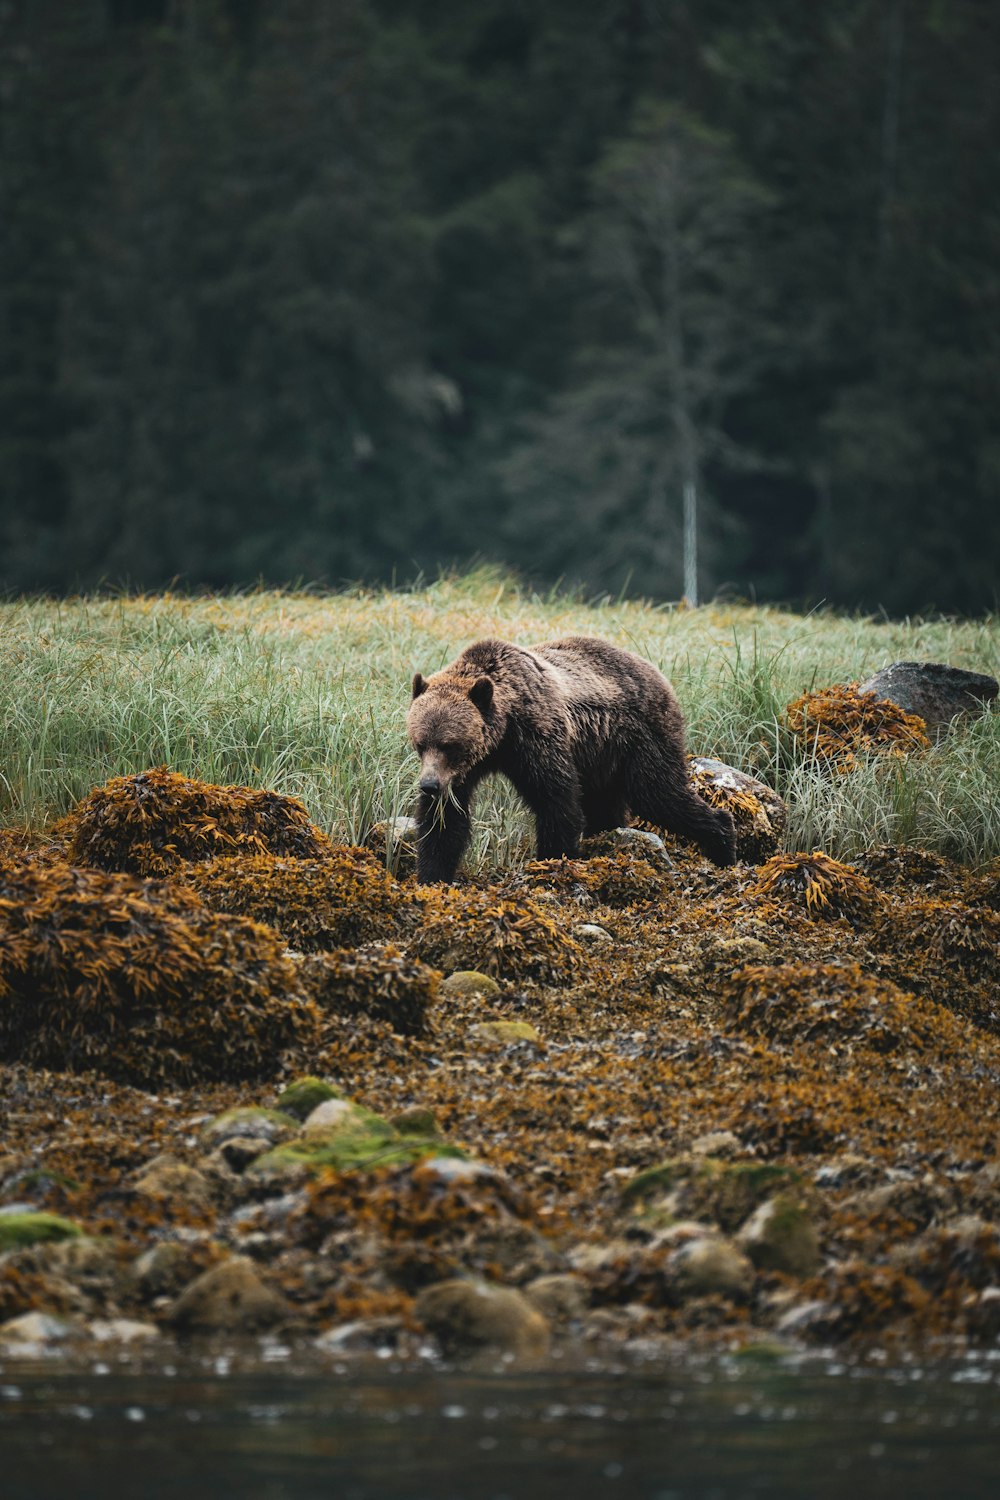 a brown bear walking across a grass covered field